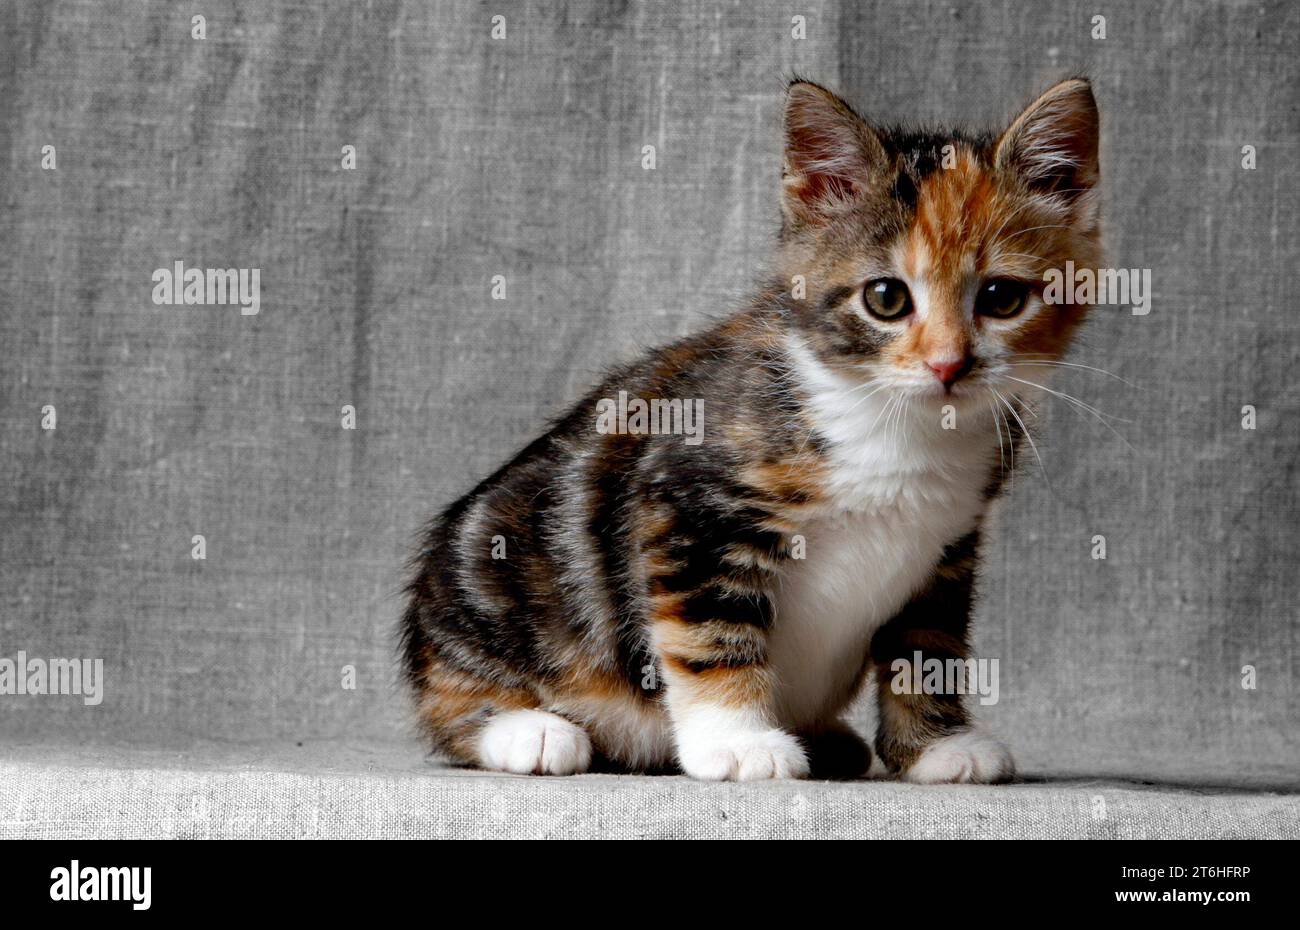 Ein Kätzchen, das in einem Studio fotografiert wurde. Stockfoto